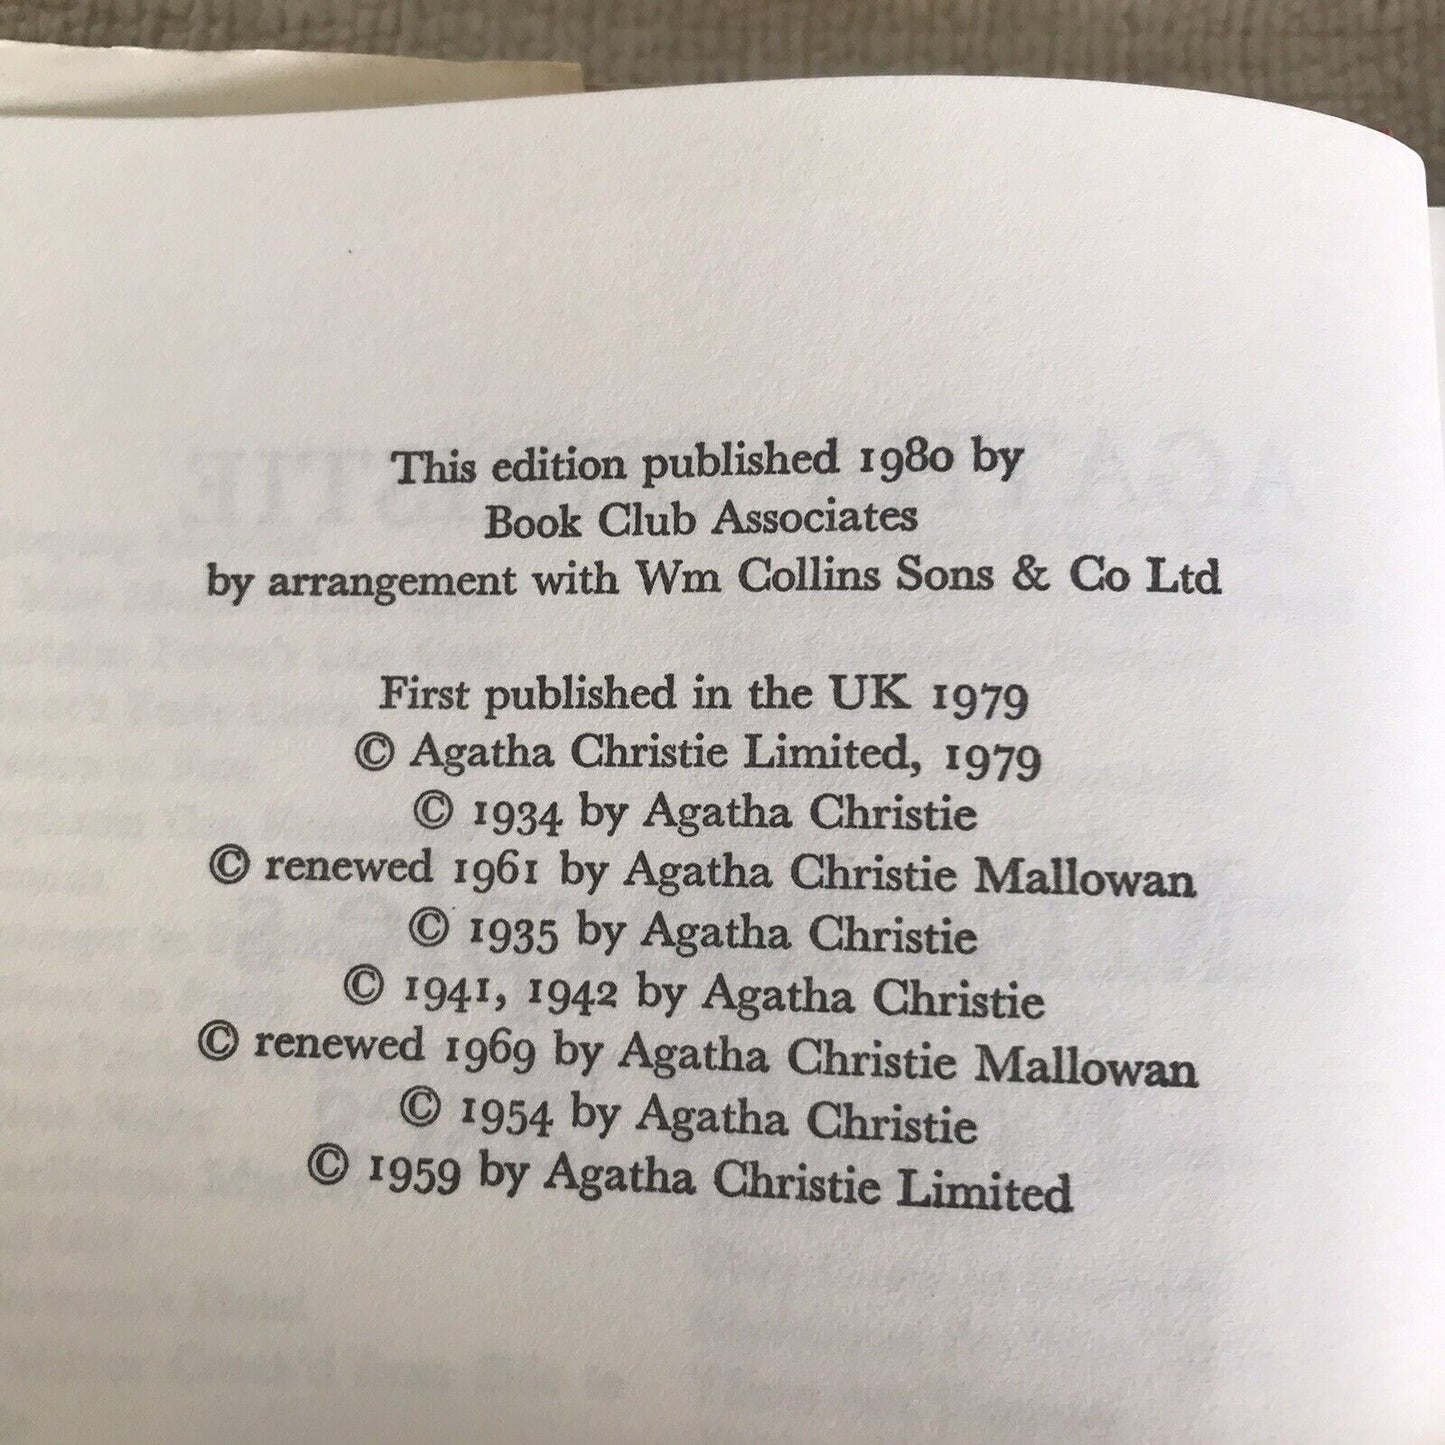 1980 Miss Marple’s Final Cases - Agatha Christie(Book Club)